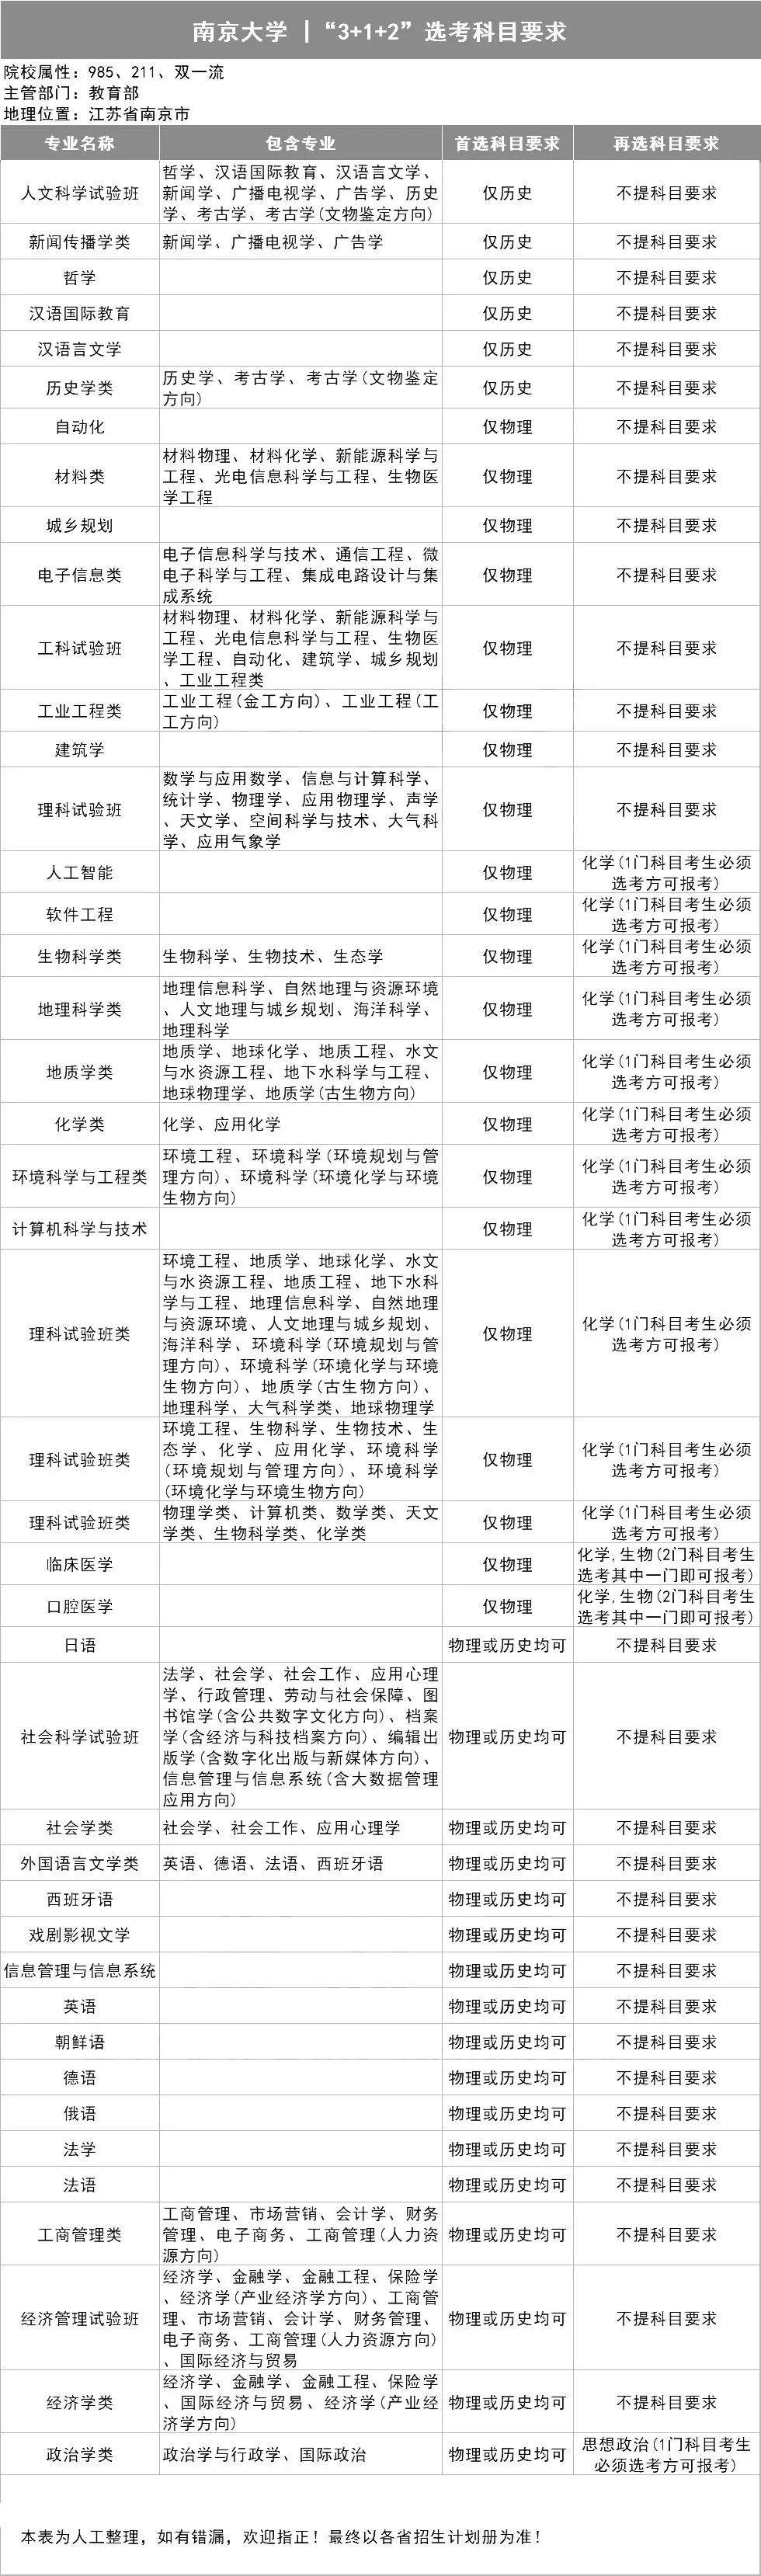 南京大学3+1+2选考科目要求